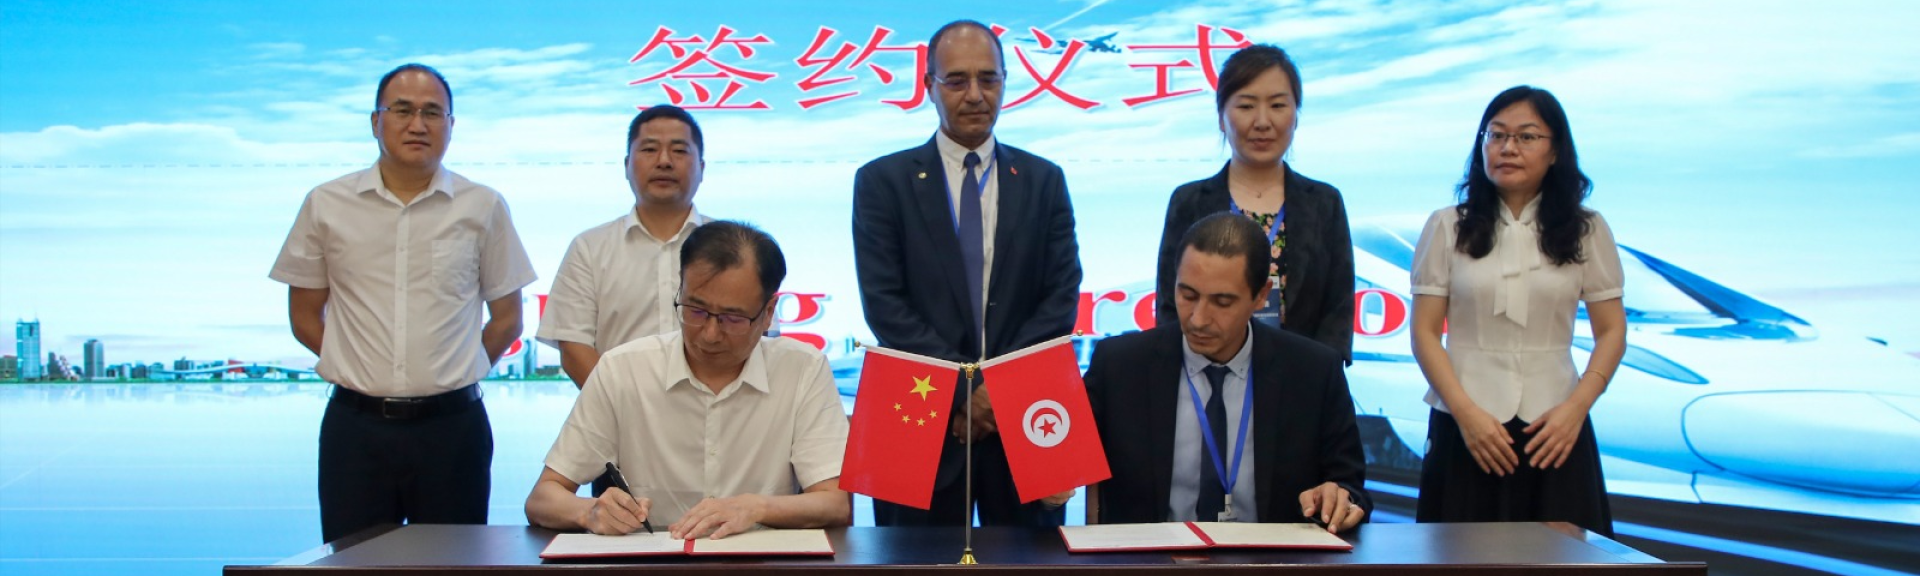 Nouvelle Signature de Convention de Partenariat entre l’Ecole Polytechnique de l’Université Centrale et Hunan Vocational College of Railway Technology